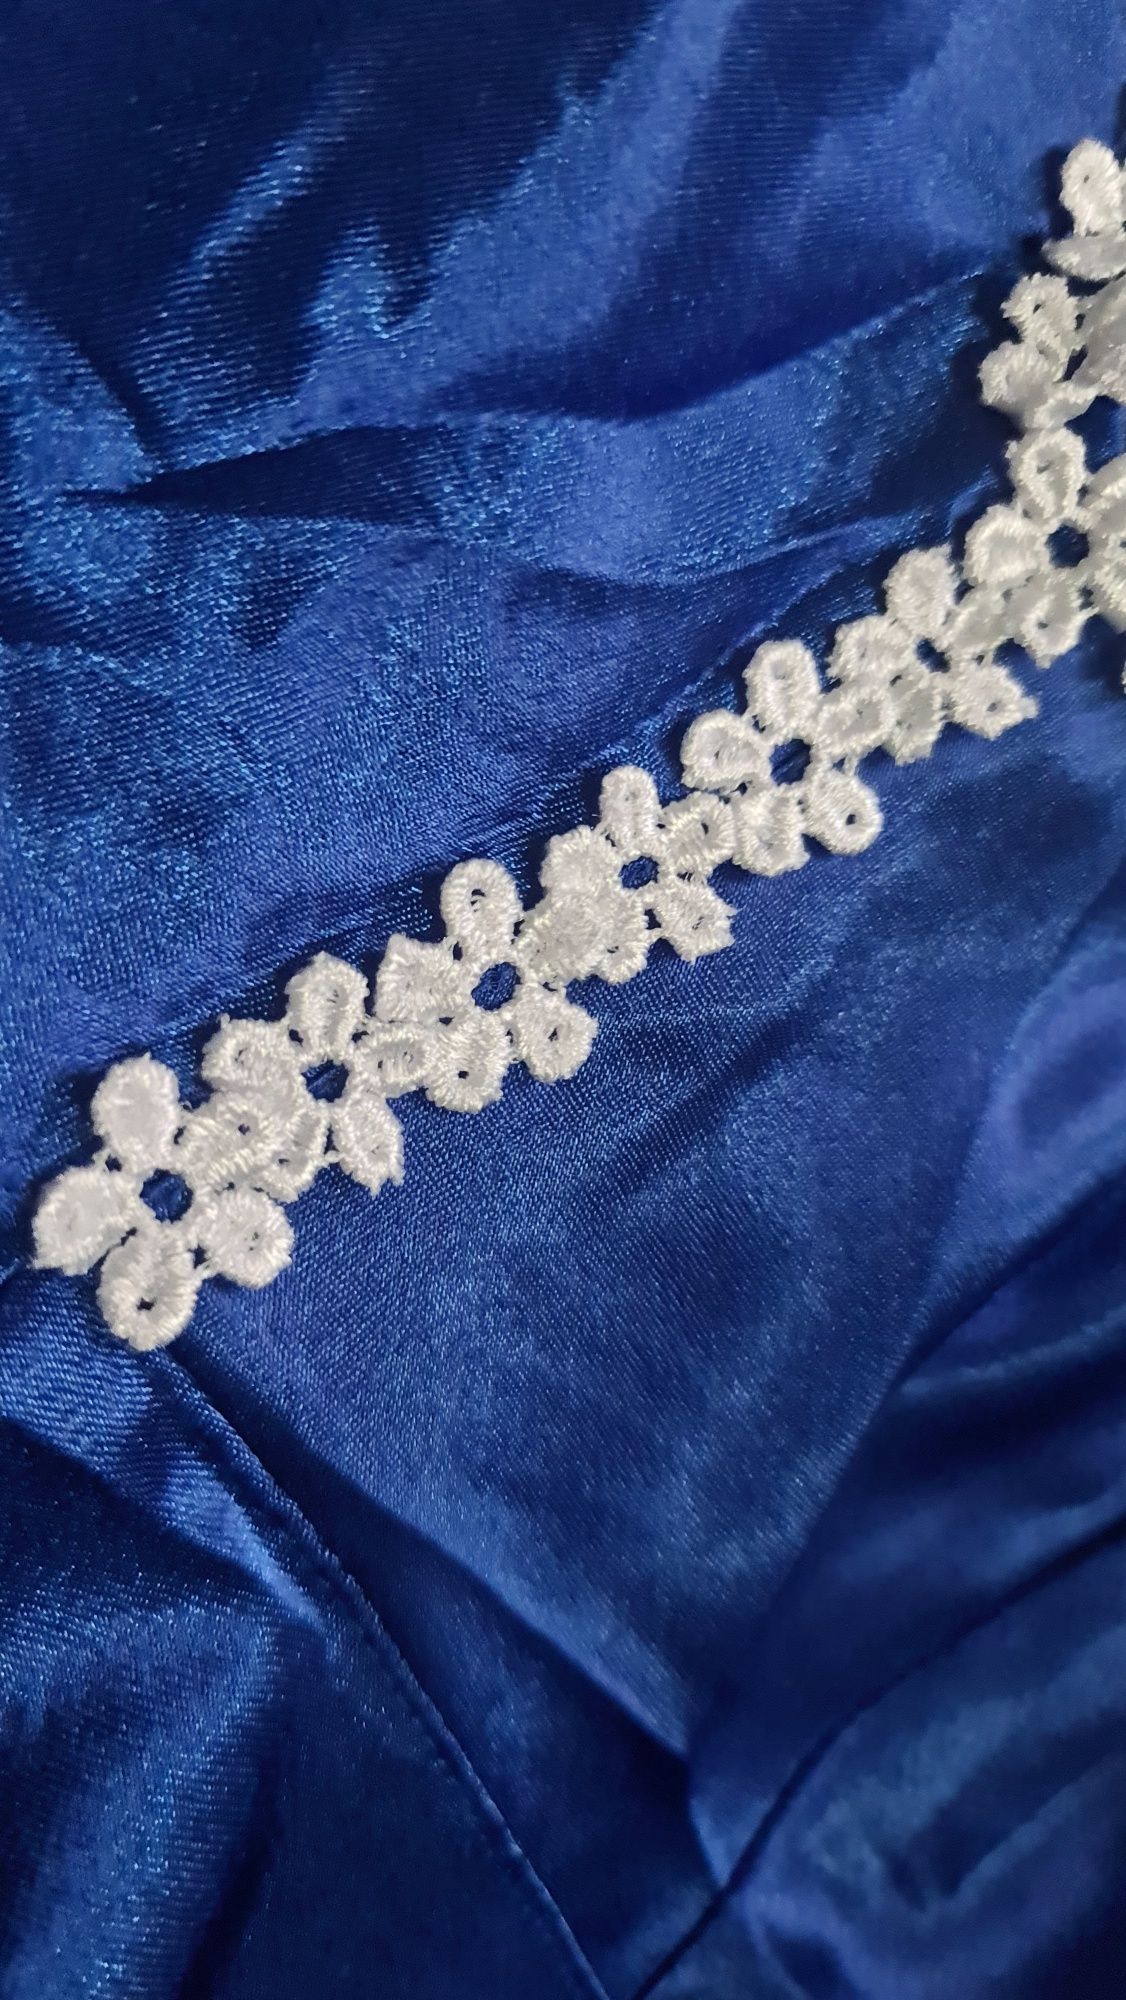 Vând rochie din satin albastră făcută pe comandă mărime 40-42